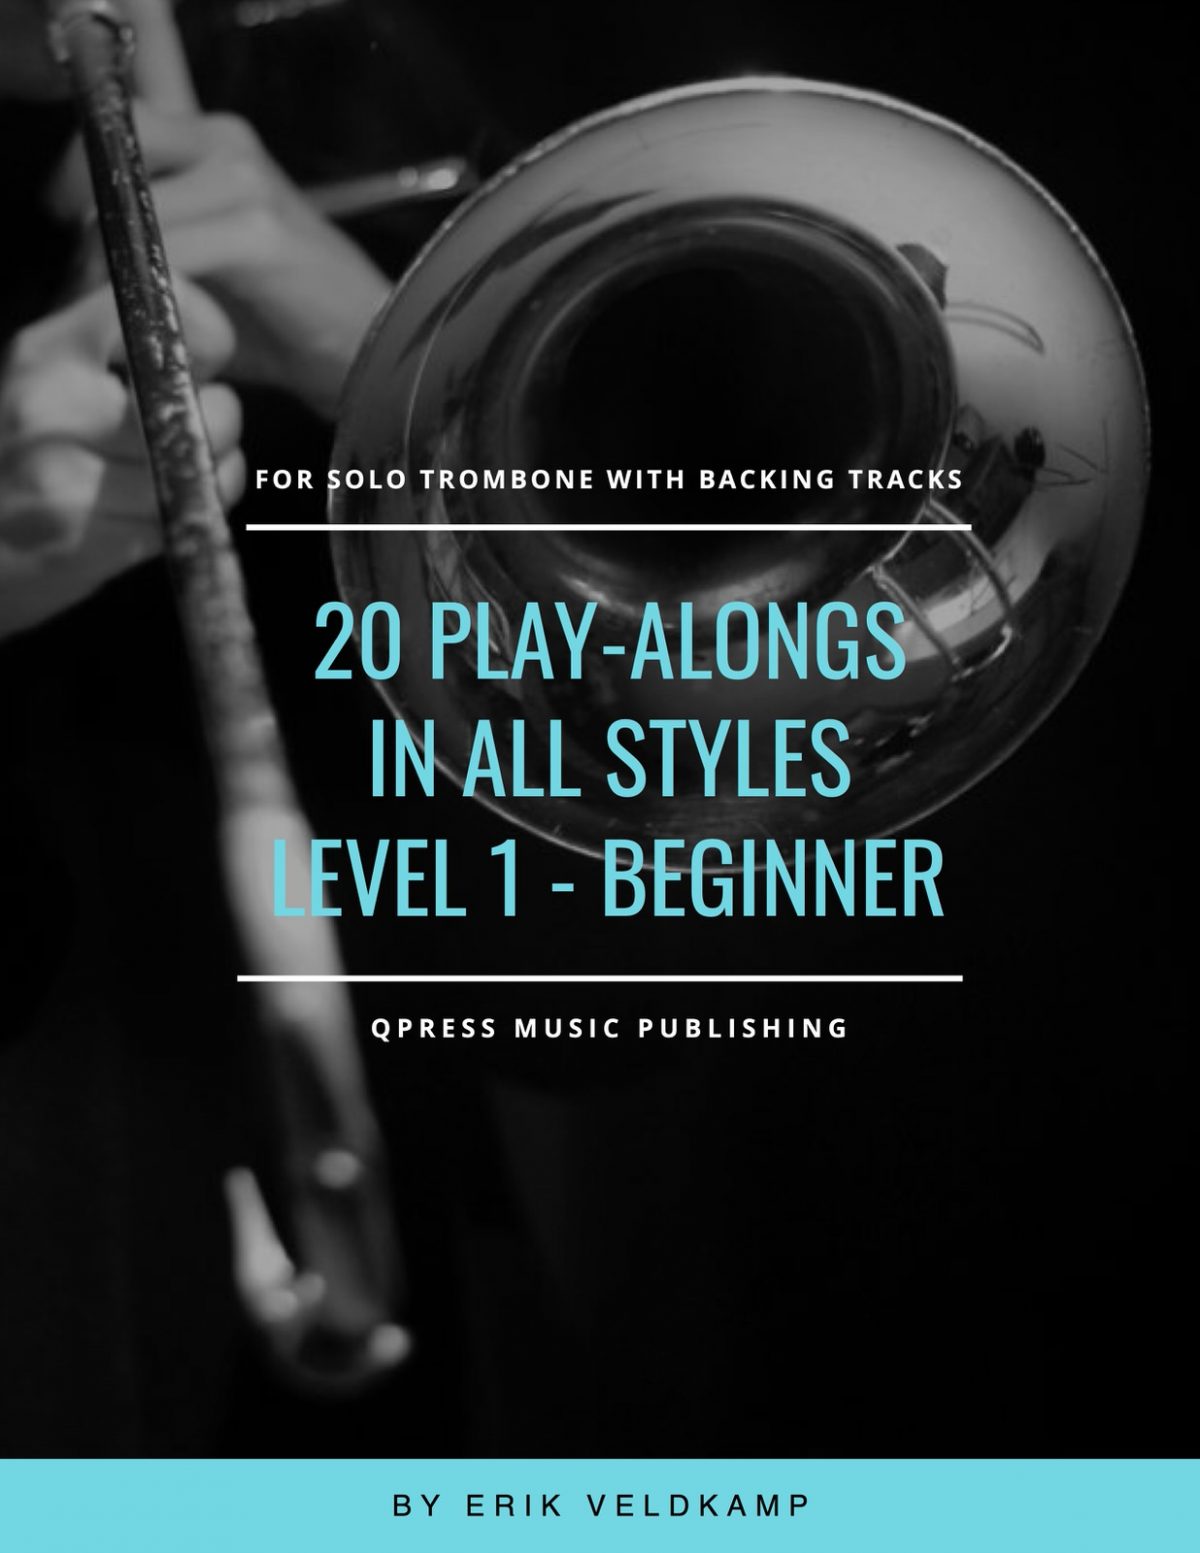 20 Play Alongs in All Styles Level 1 for Trombone (Beginner)